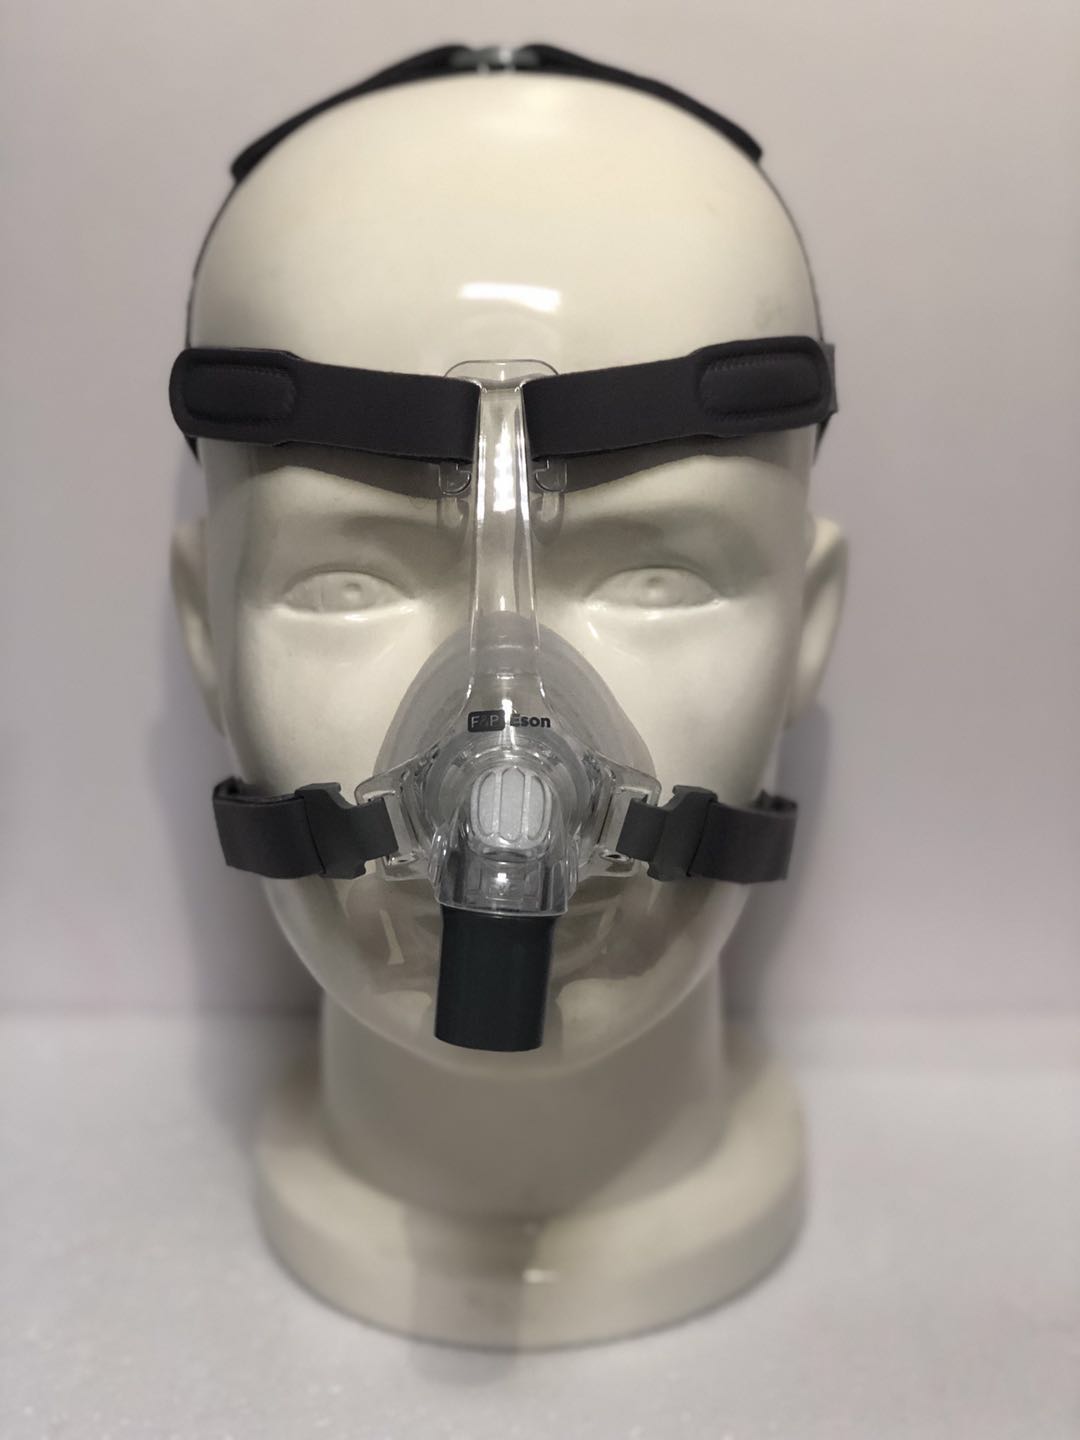 共303 件呼吸机面罩相关商品